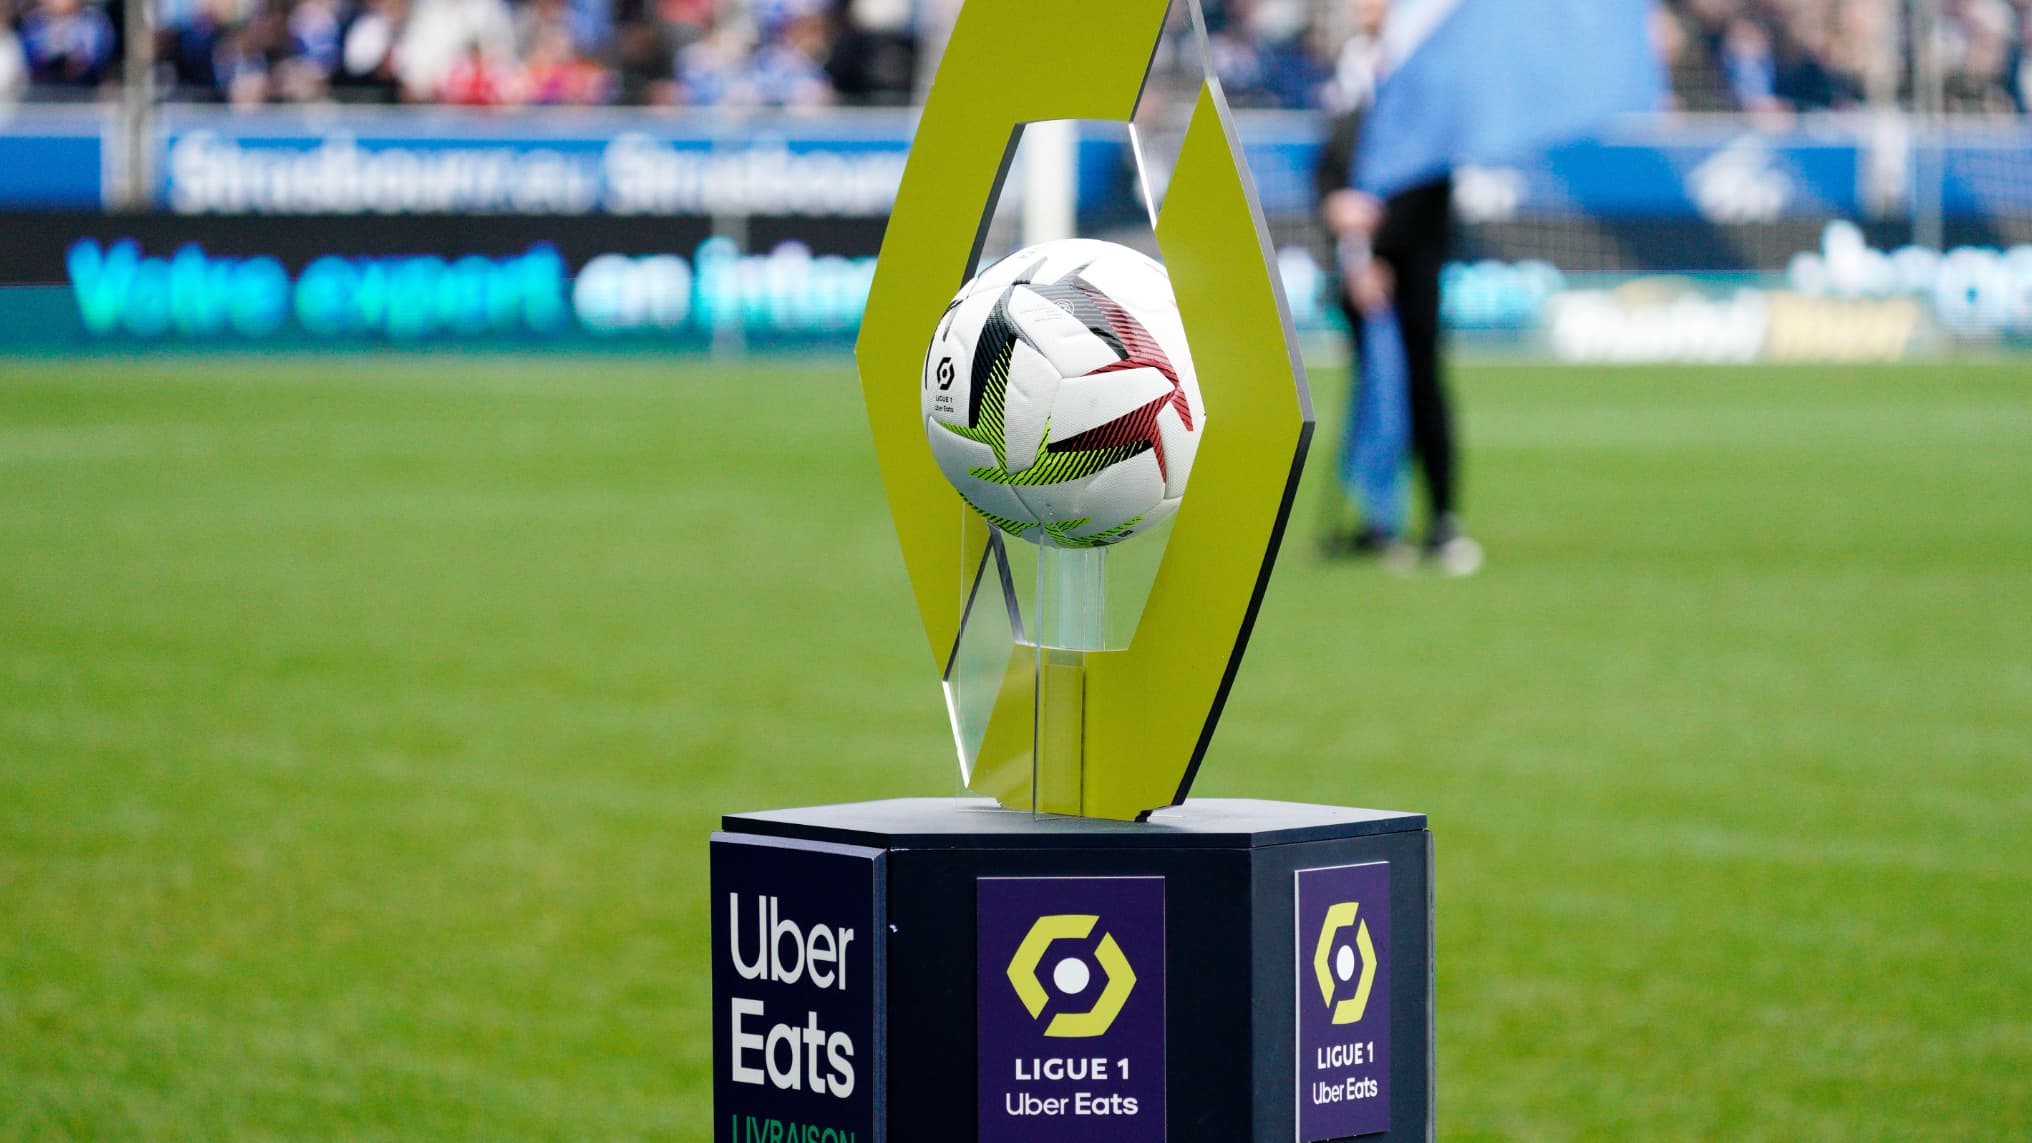 La LFP svela il nuovo logo della Ligue 1 per la prossima stagione